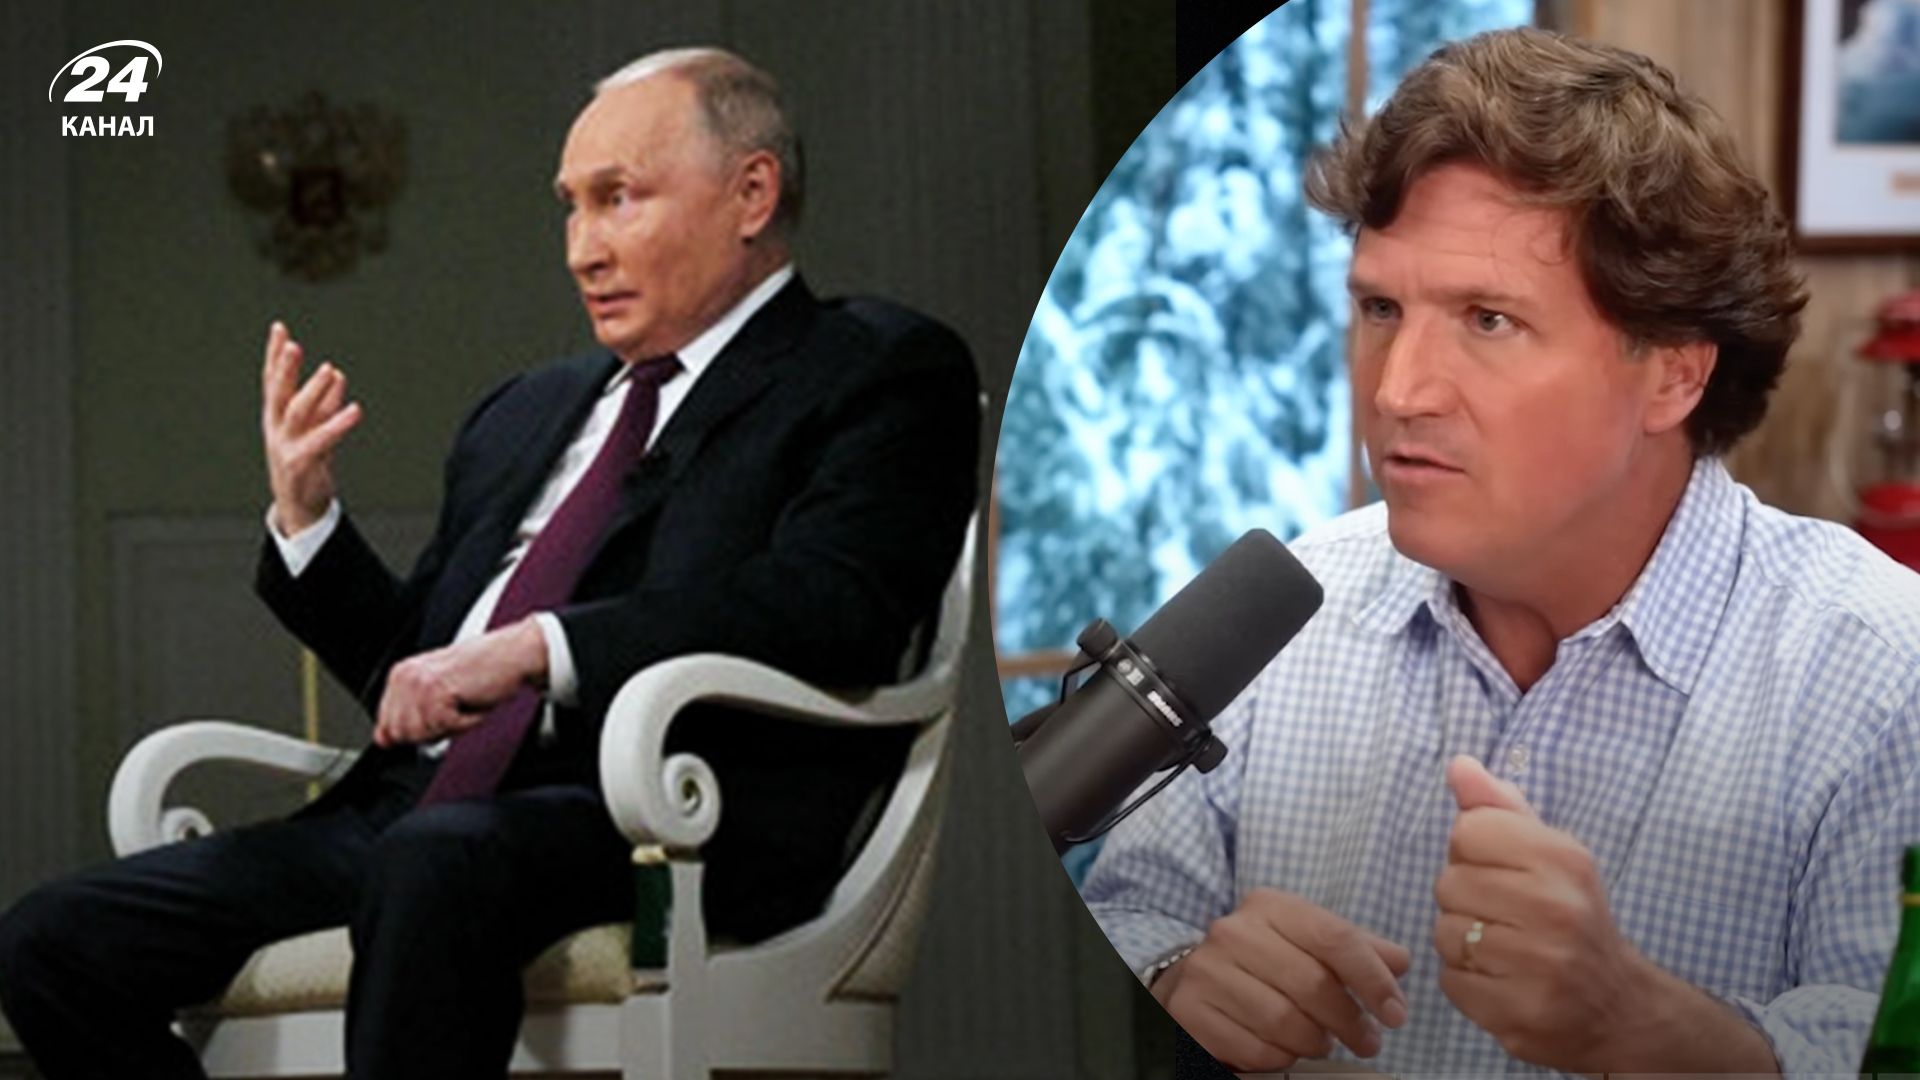 Карлсон раскритиковал Путина за "денацификацию", о которой тот говорил в интервью